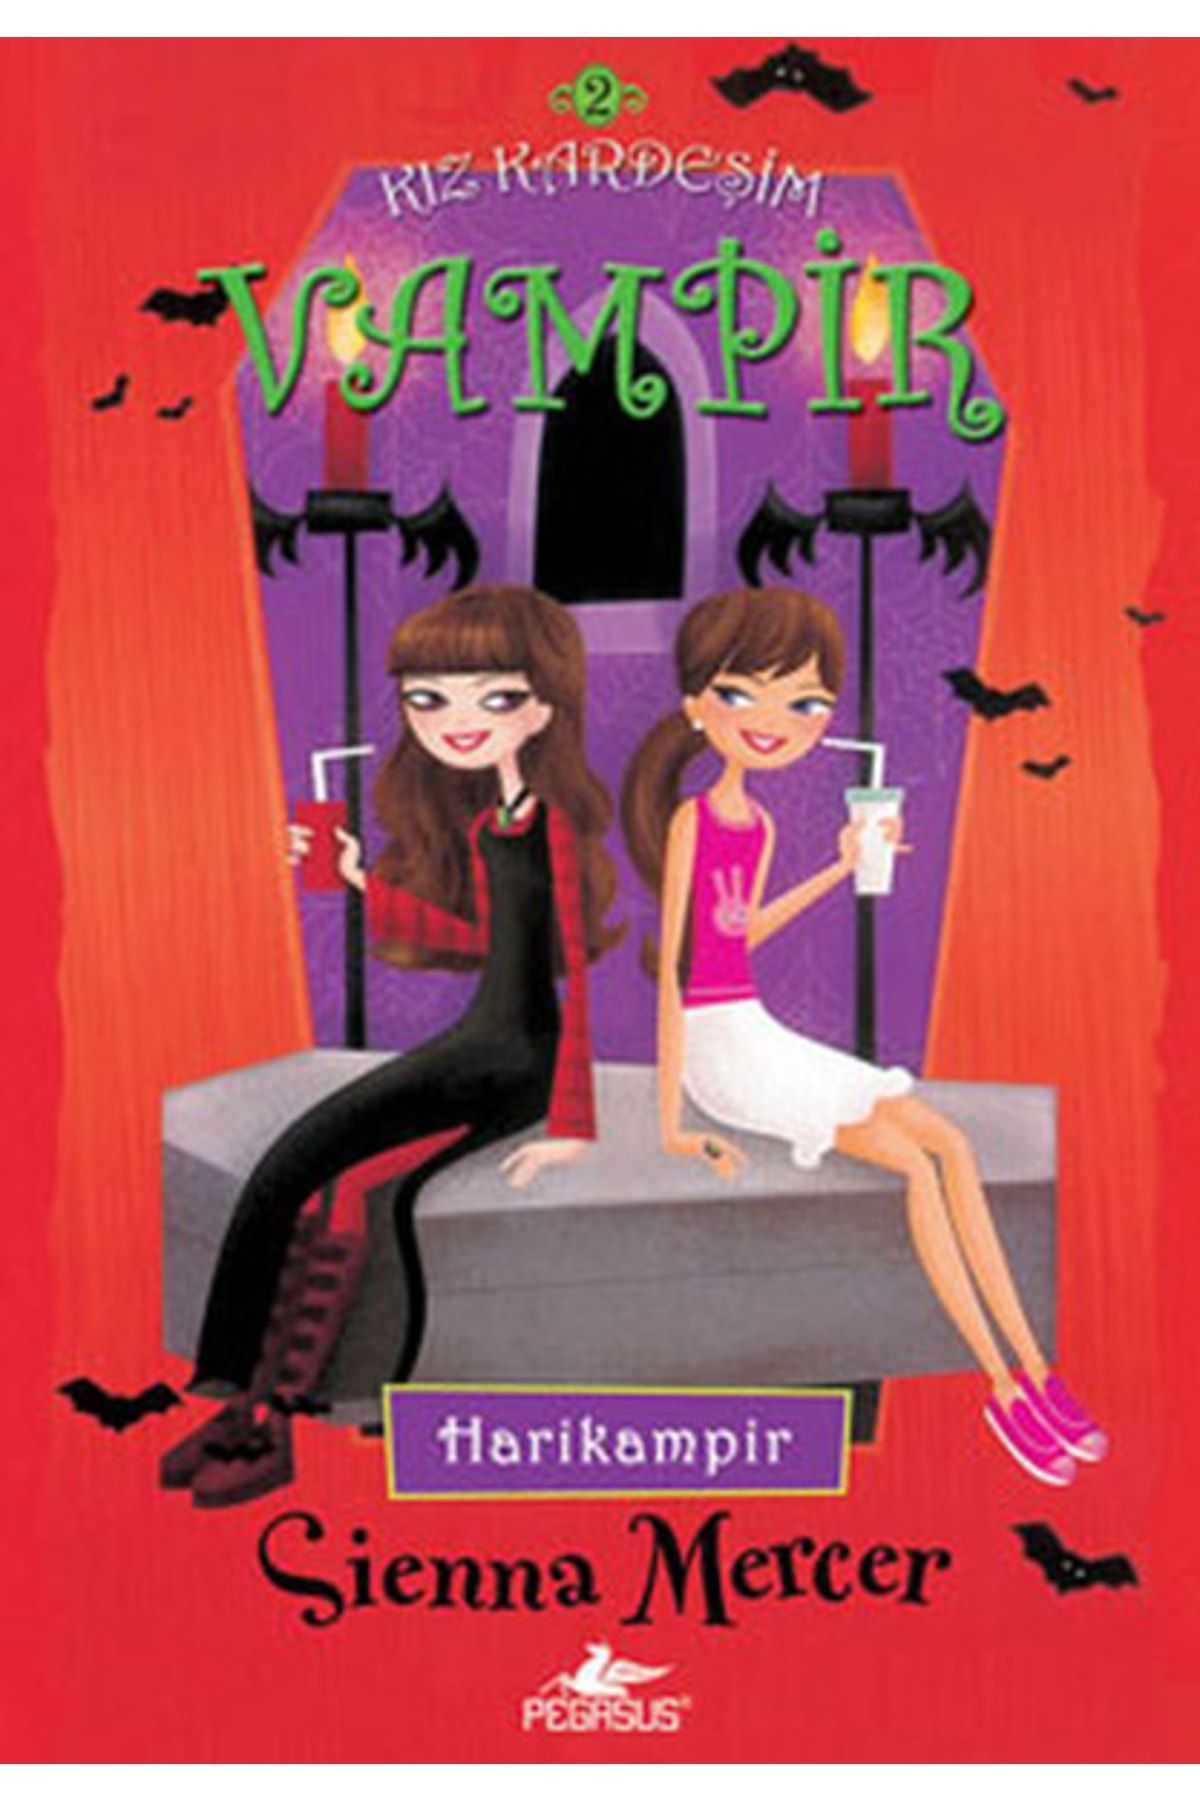 Pegasus Yayınları Kız Kardeşim Vampir Serisi 2: Harikampir - Sienna Mercer